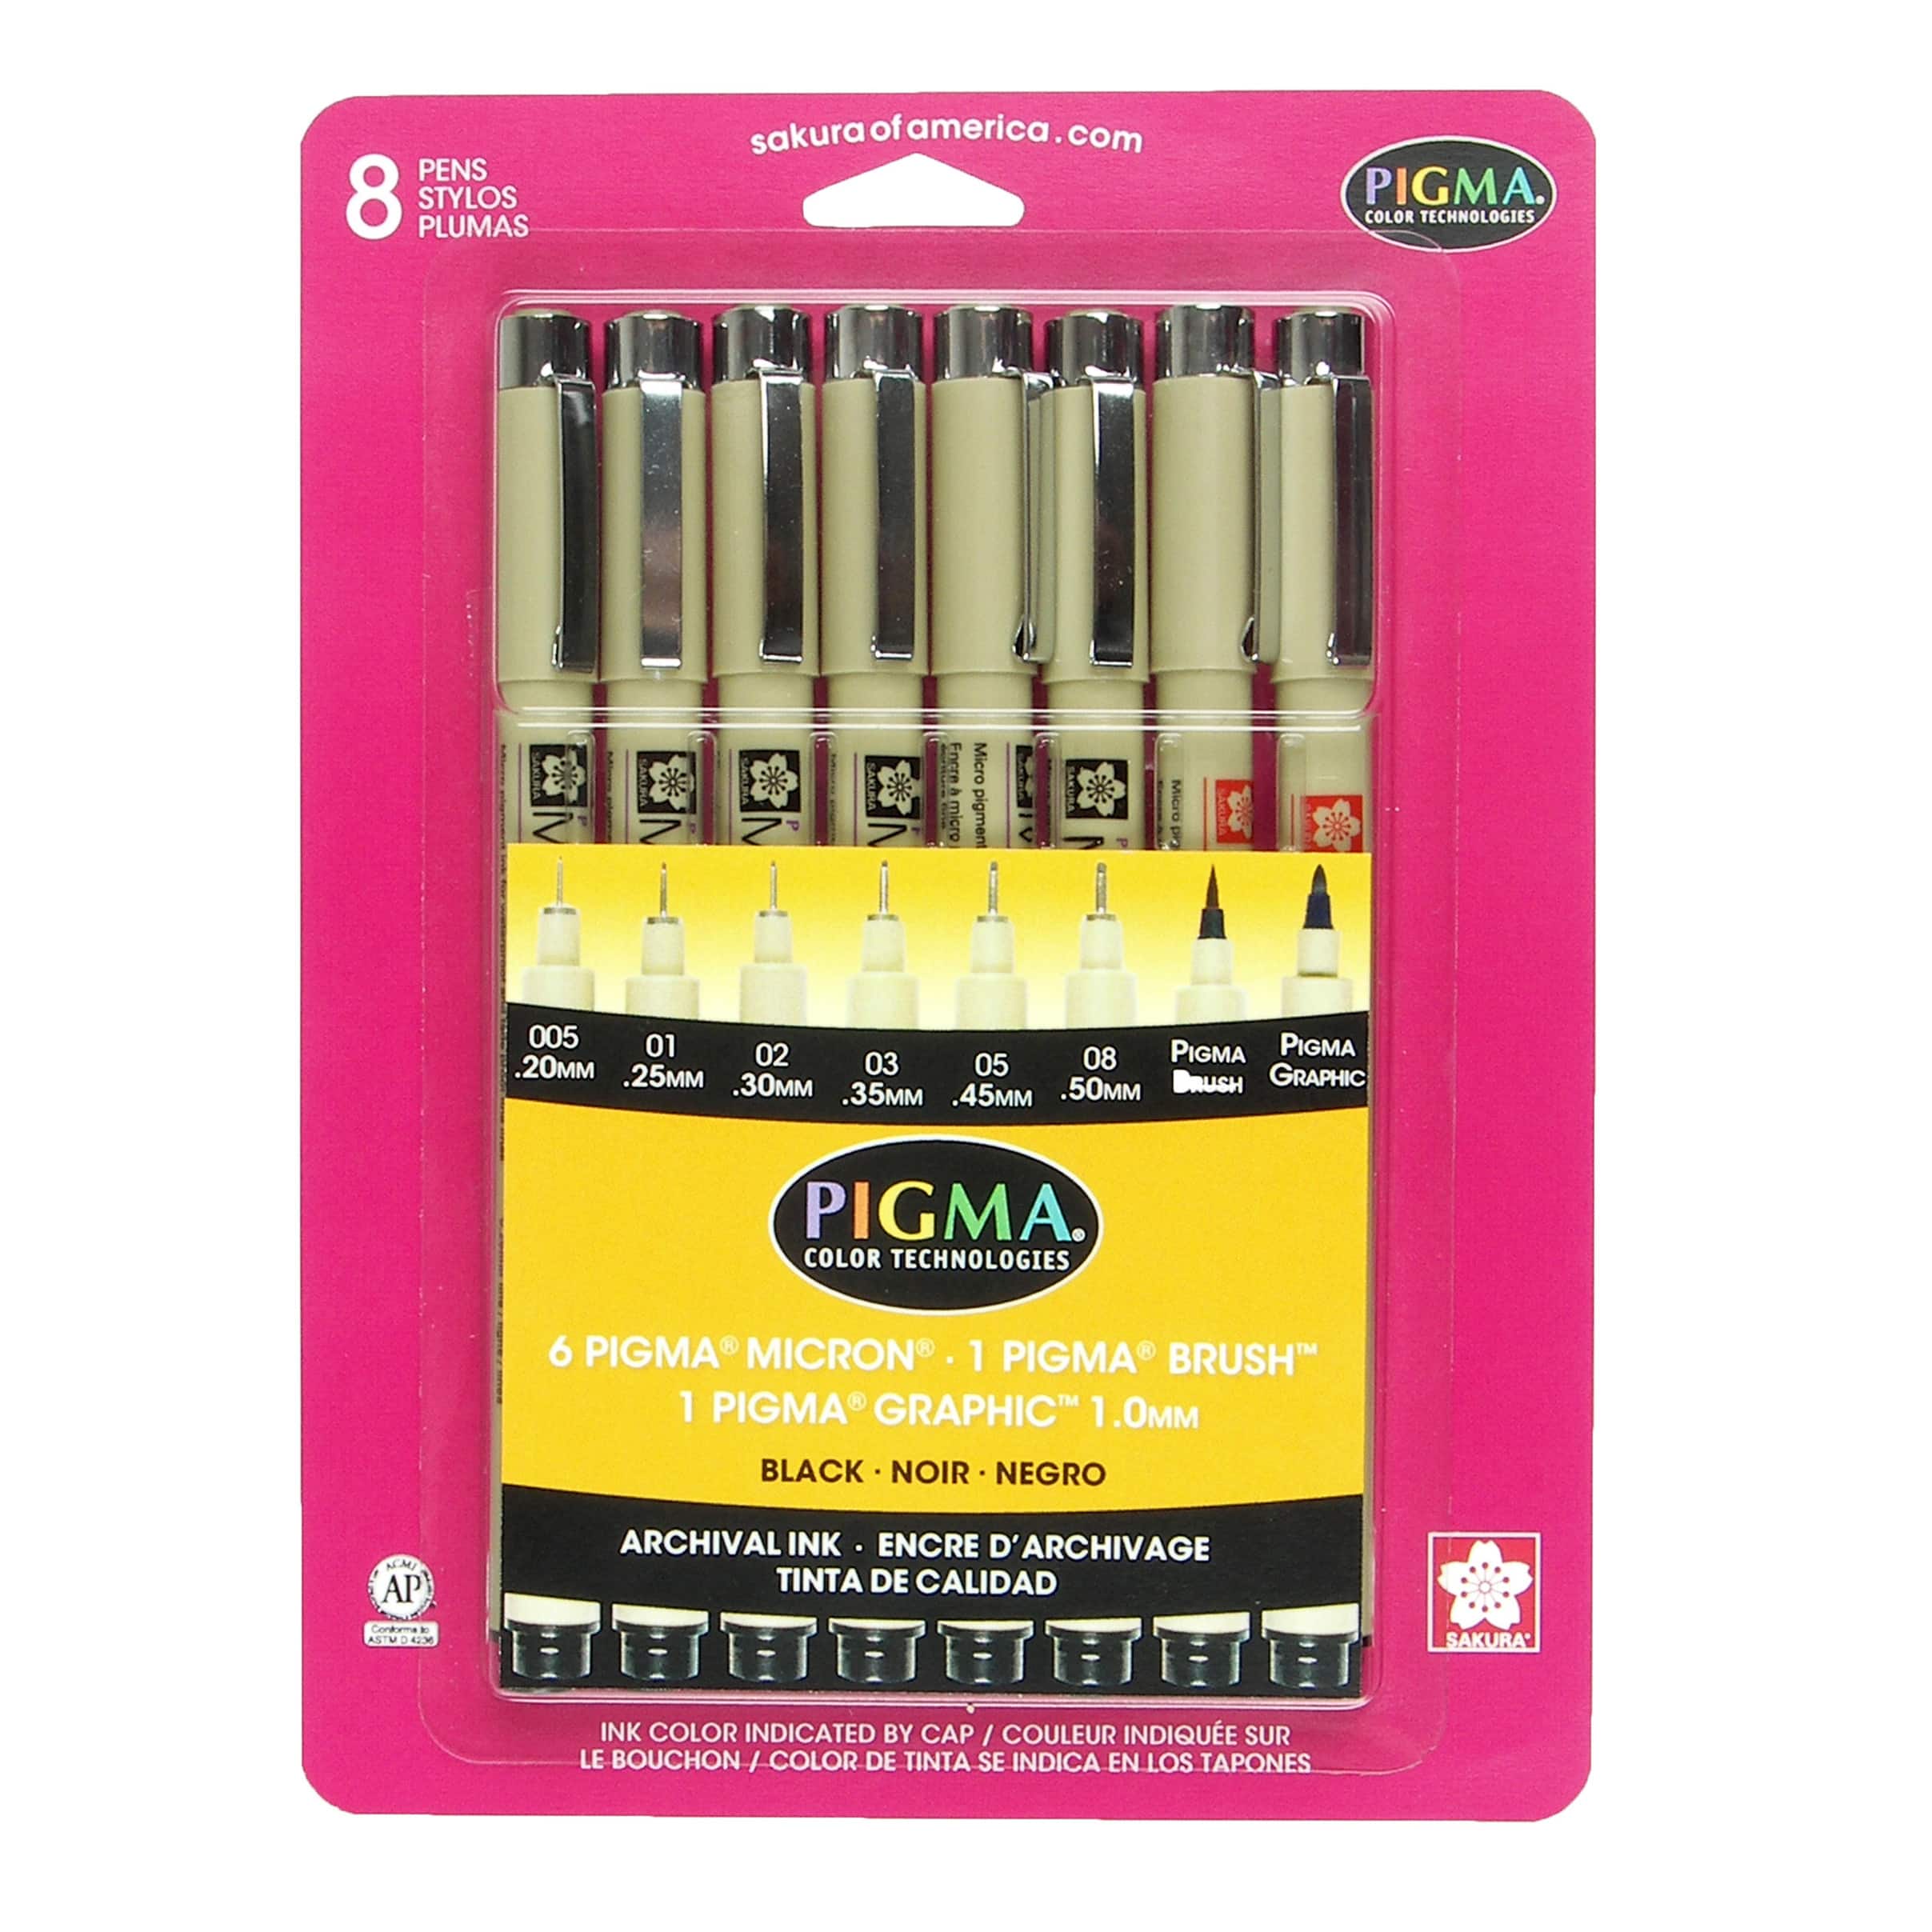 6 Packs: 8 ct. (48 total) Pigma&#xAE; Black Pen Set